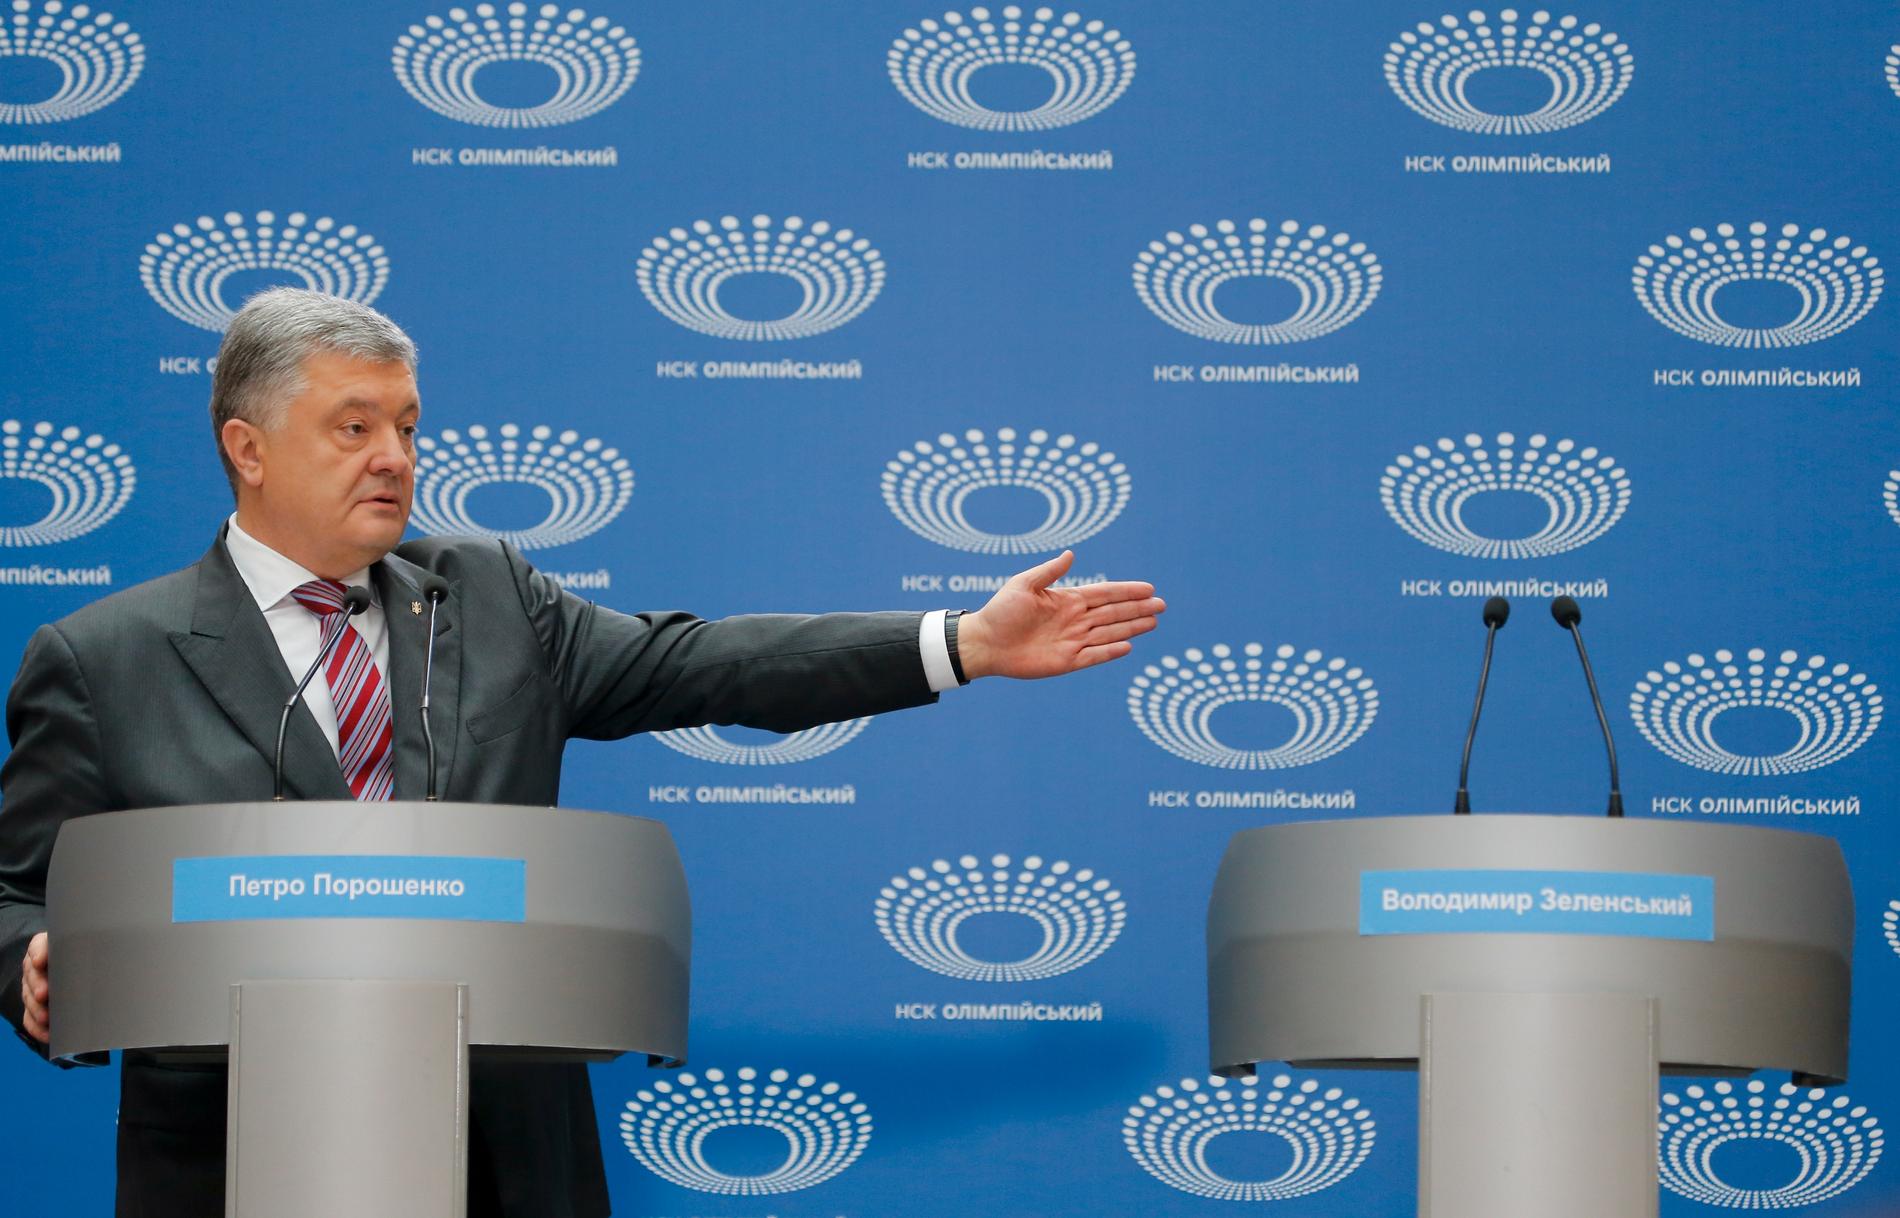 Ukrainas sittande president Petro Porosjenko gestikulerar mot det tomma podiet intill honom. En debatt mellan presidentkandidaterna hade utlysts på fotbollsarenan i Kiev i söndags, men utmanaren Volodymyr Zelenskyj, som inte bekräftat dagen, dök aldrig upp.